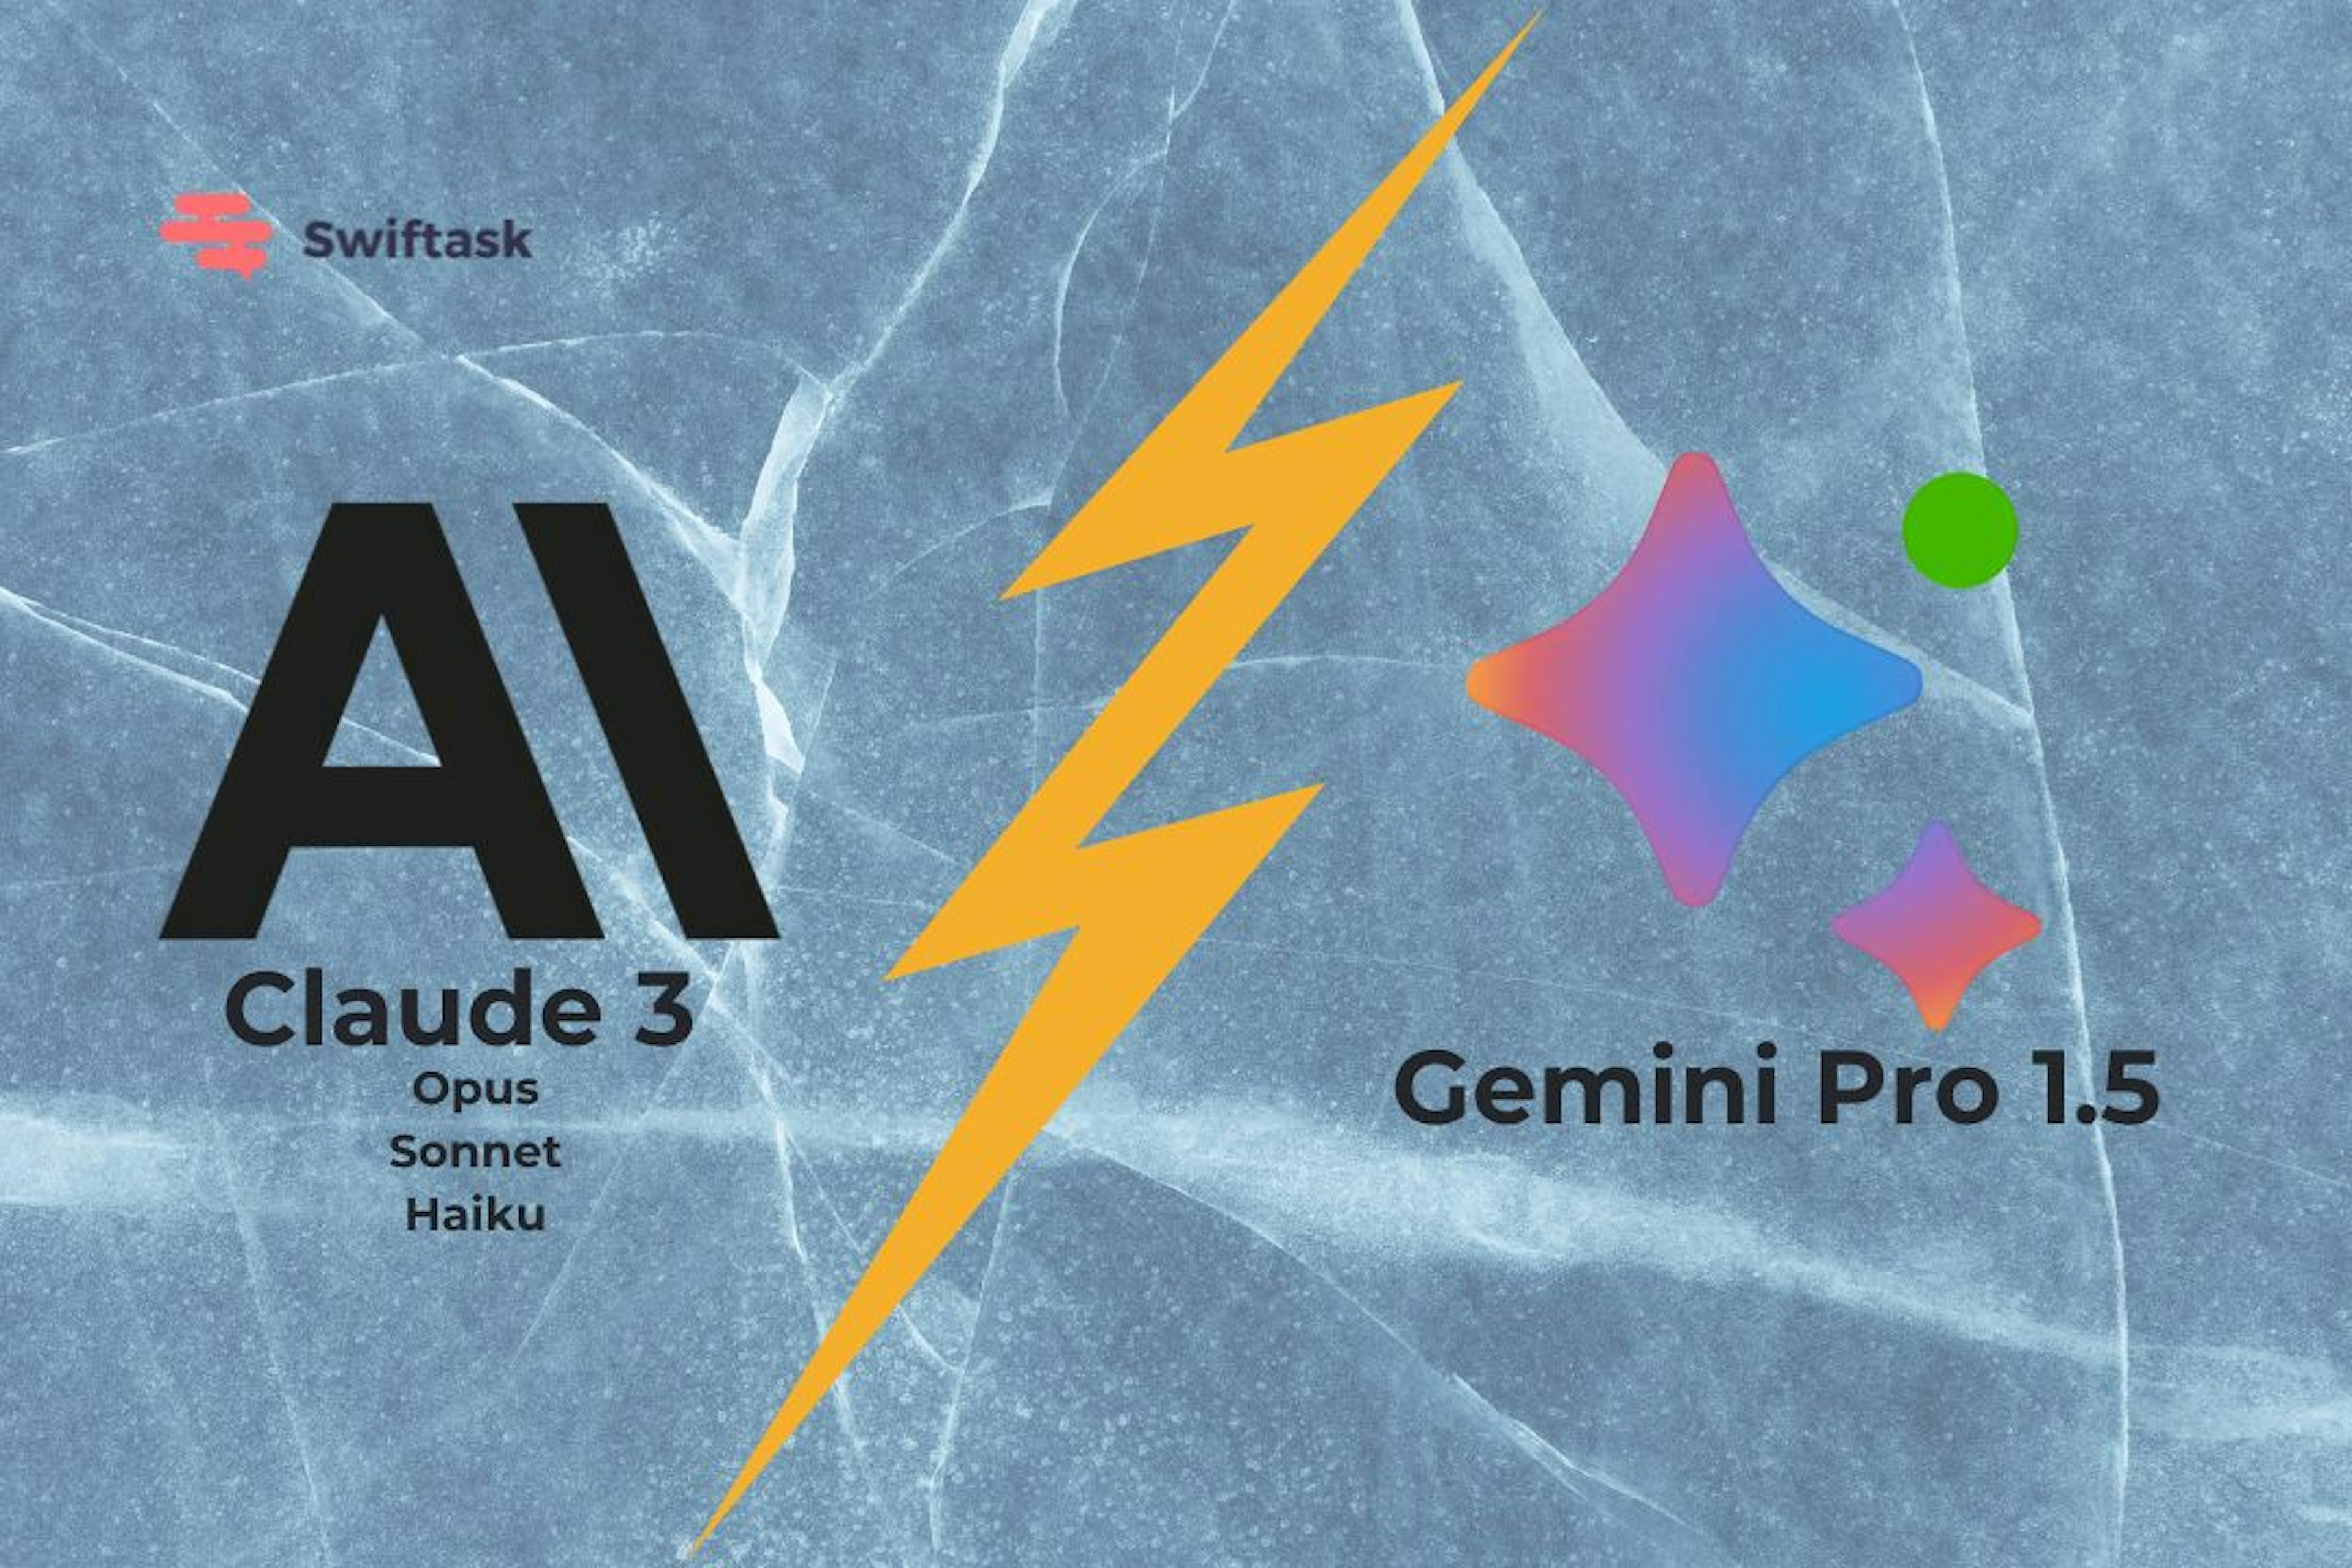 Gemini Pro 1.5 vs Claude 3